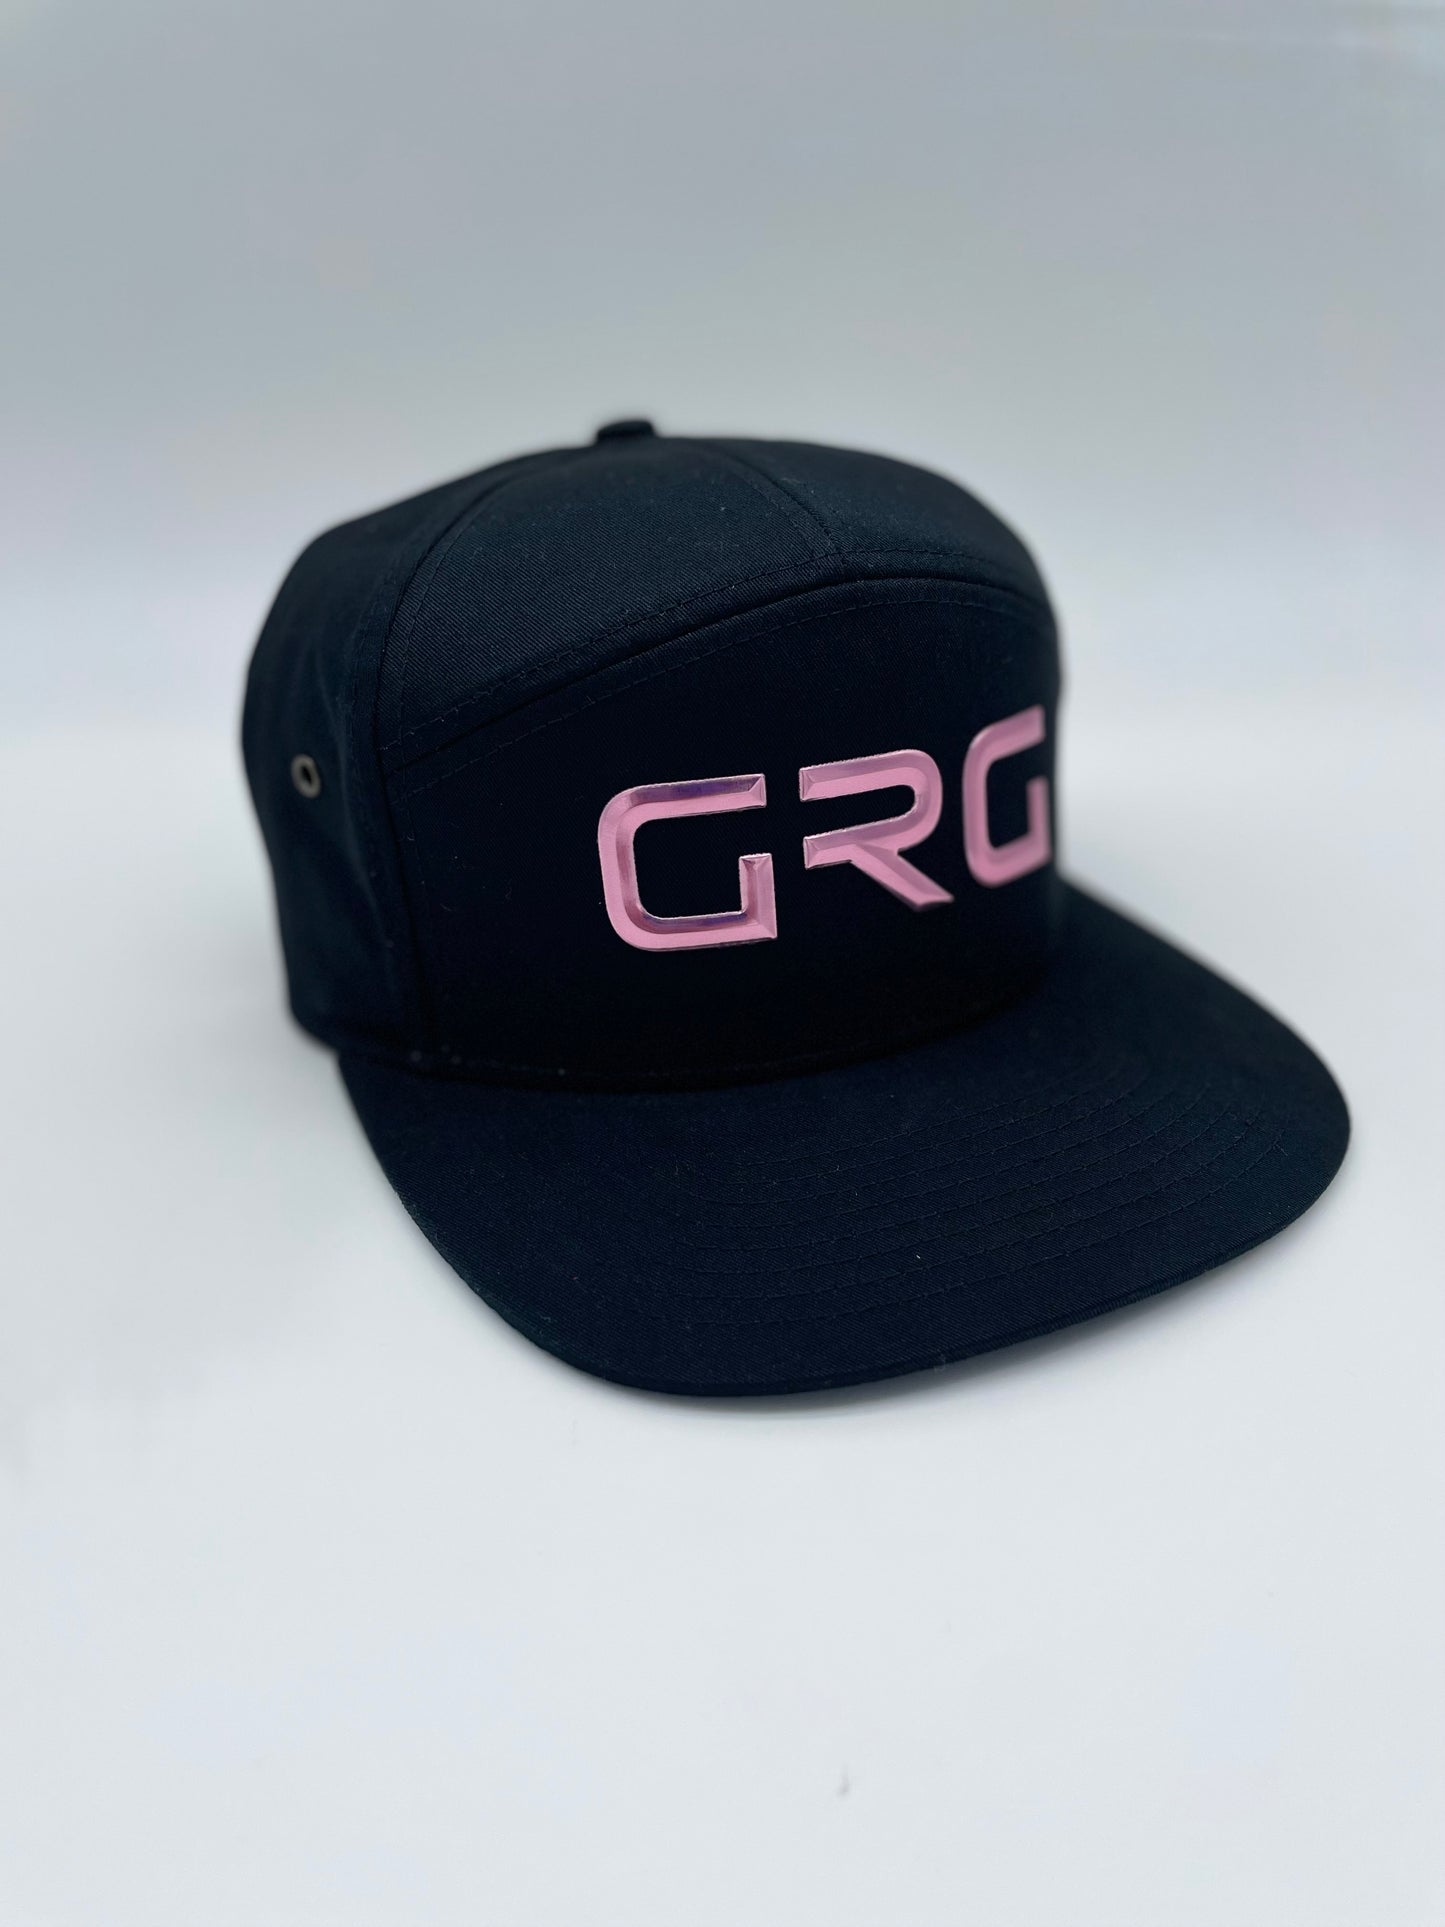 GRG Mauve Chrome Edition Caps